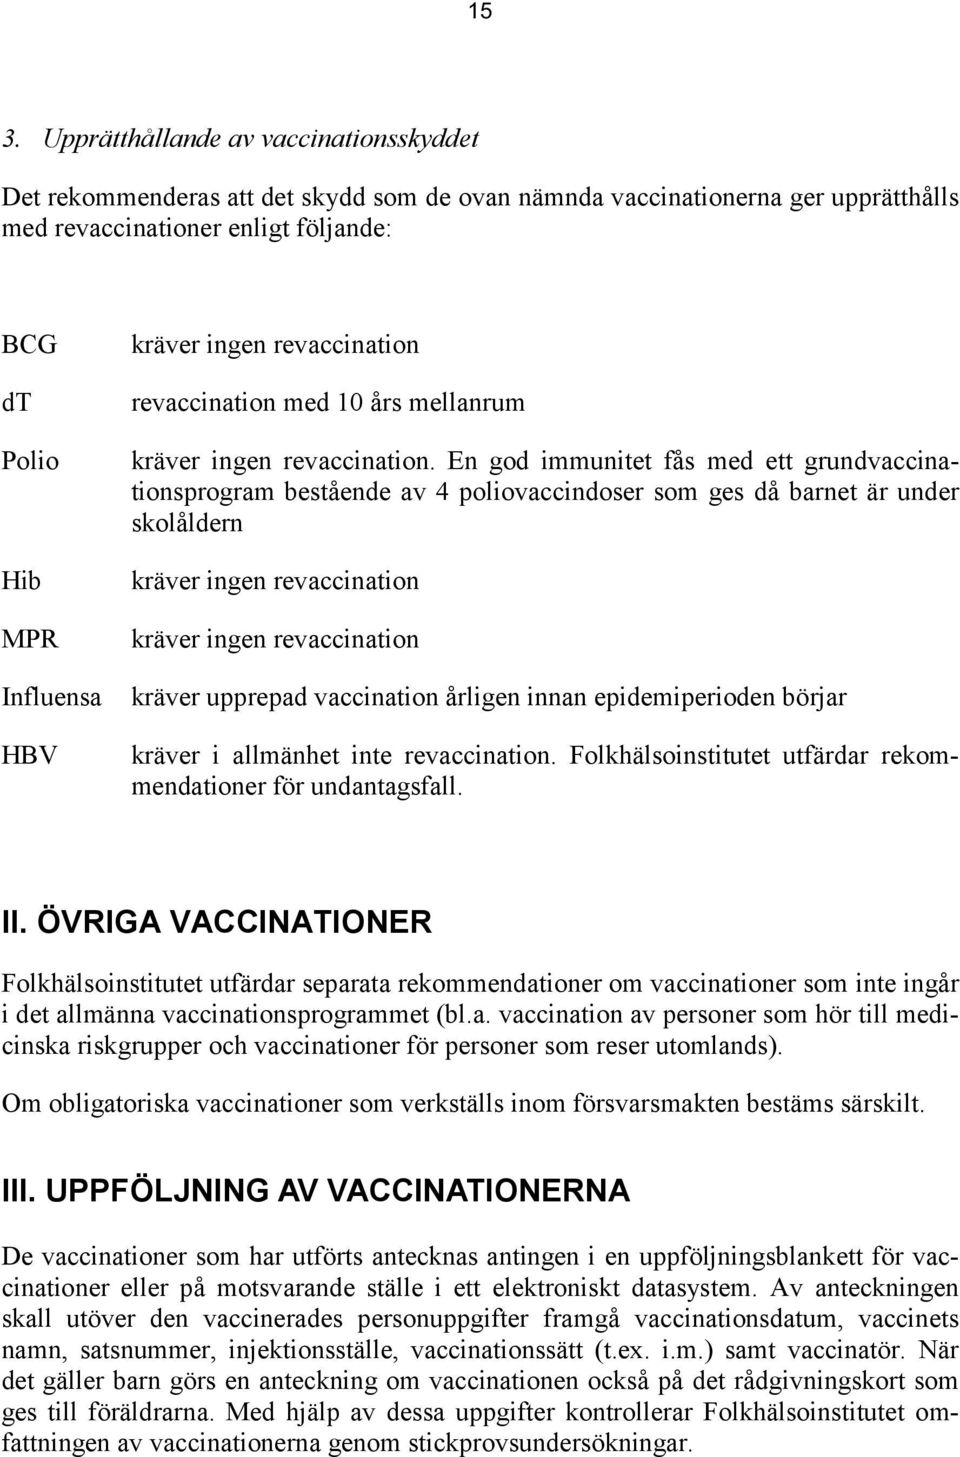 En god immunitet fås med ett grundvaccinationsprogram bestående av 4 poliovaccindoser som ges då barnet är under skolåldern kräver ingen revaccination kräver ingen revaccination kräver upprepad